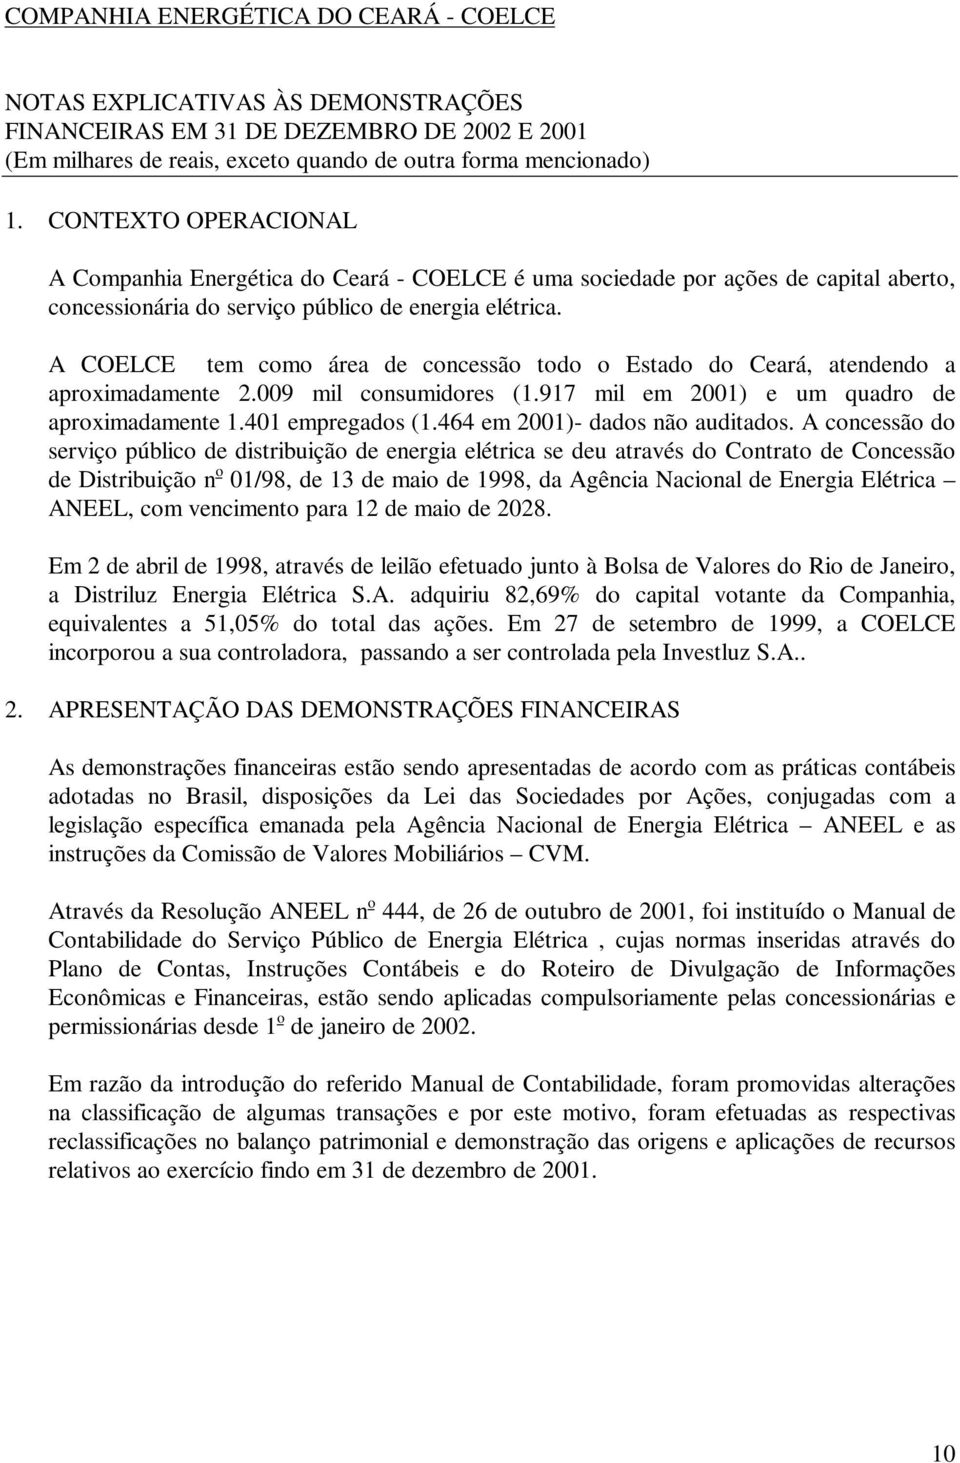 A COELCE tem como área de concessão todo o Estado do Ceará, atendendo a aproximadamente 2.009 mil consumidores (1.917 mil em 2001) e um quadro de aproximadamente 1.401 empregados (1.